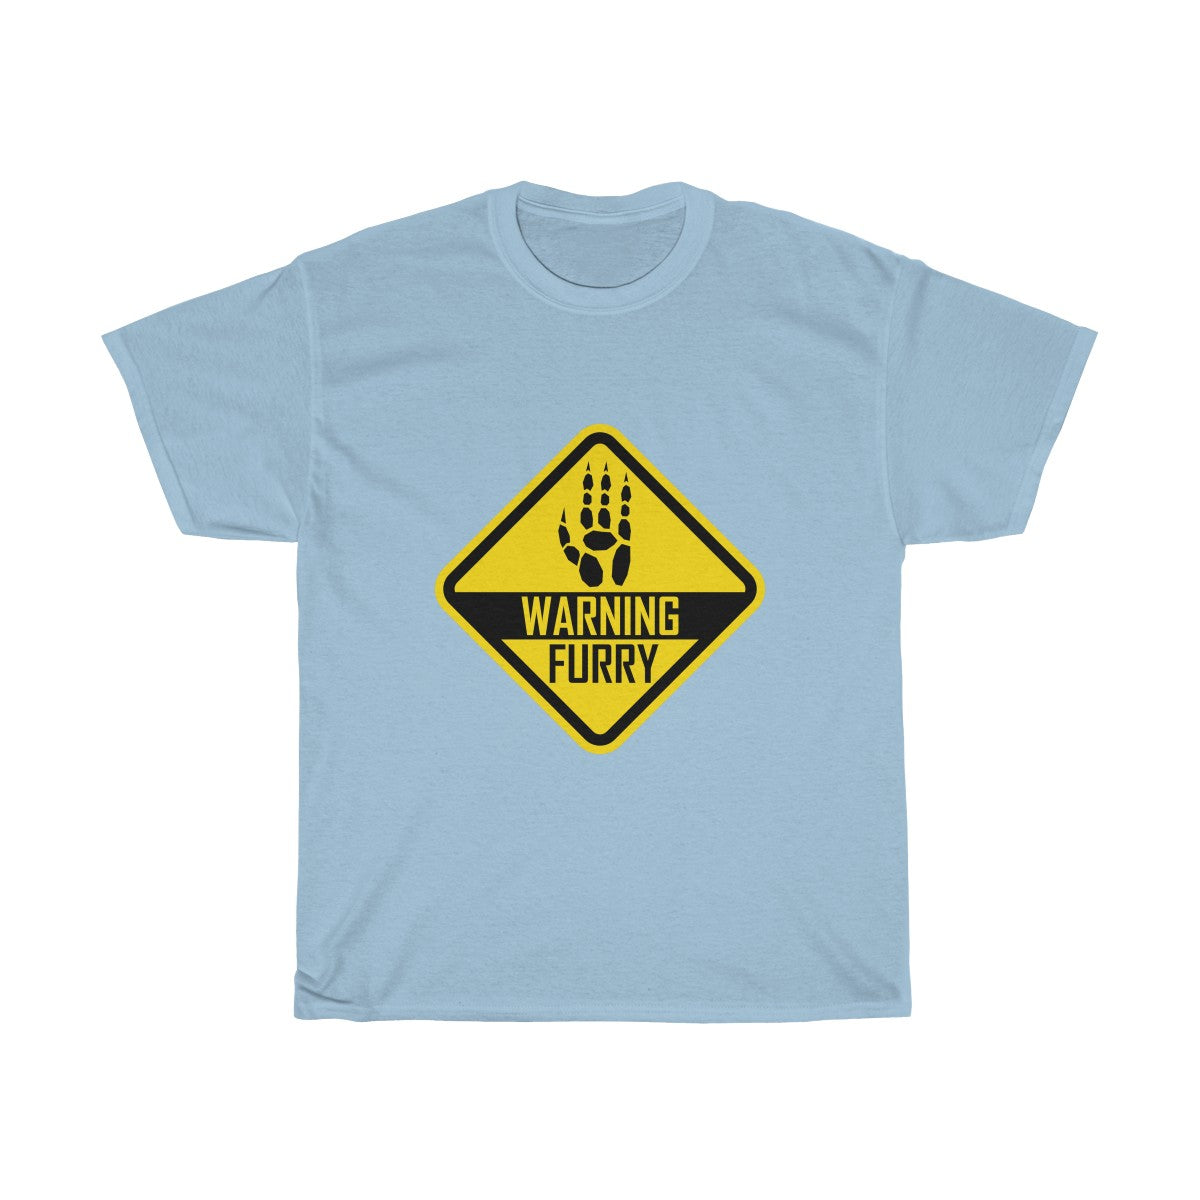 Warning Sergal - T-Shirt T-Shirt Wexon Light Blue S 